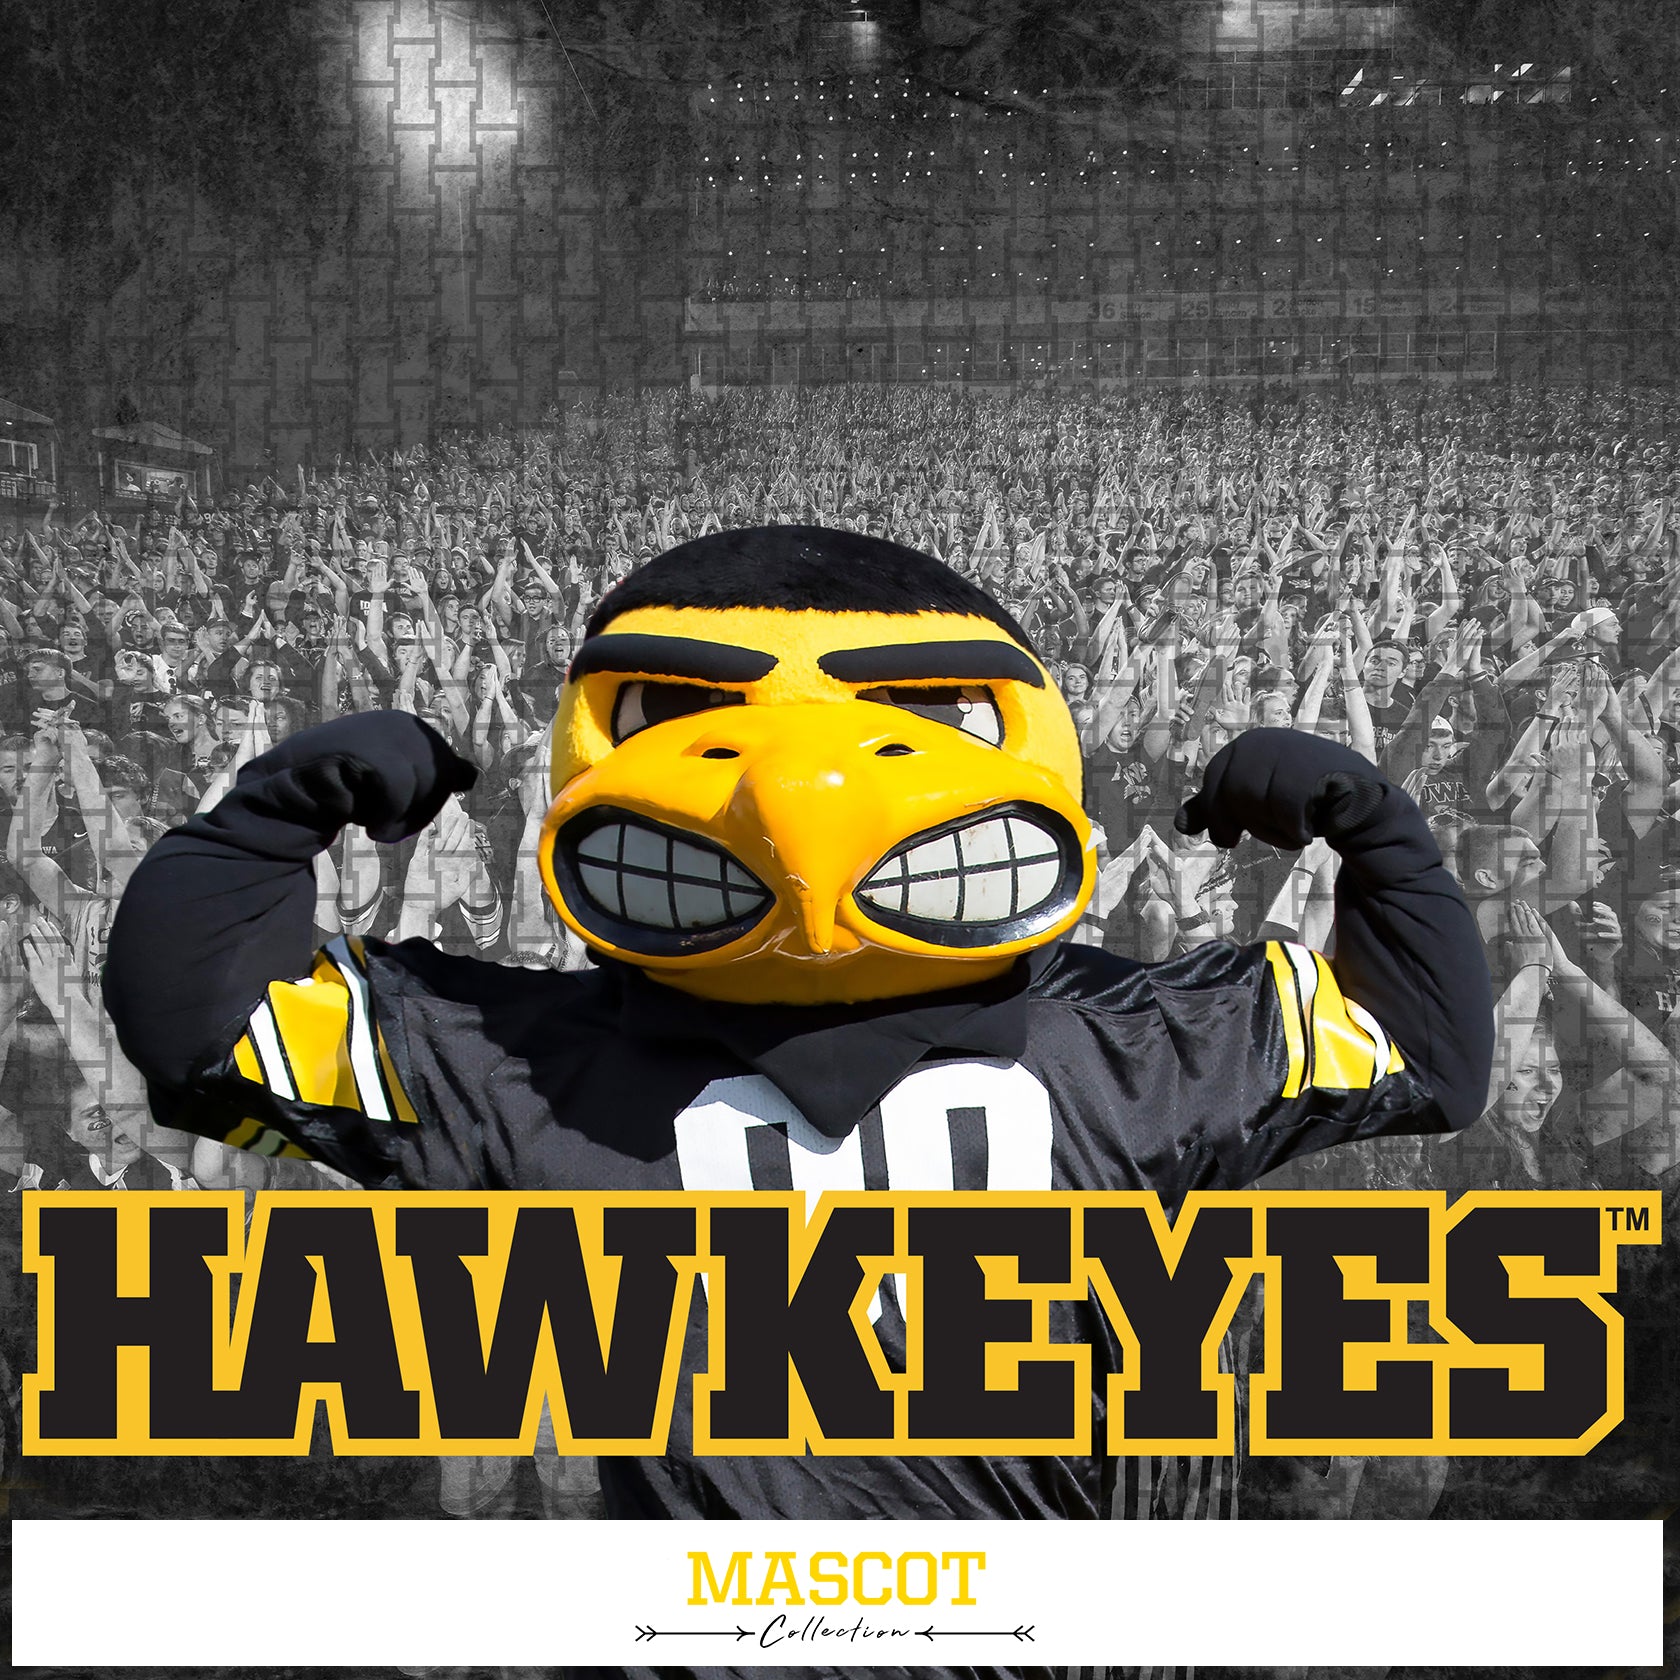 Iowa Hawkeyes - Mascot